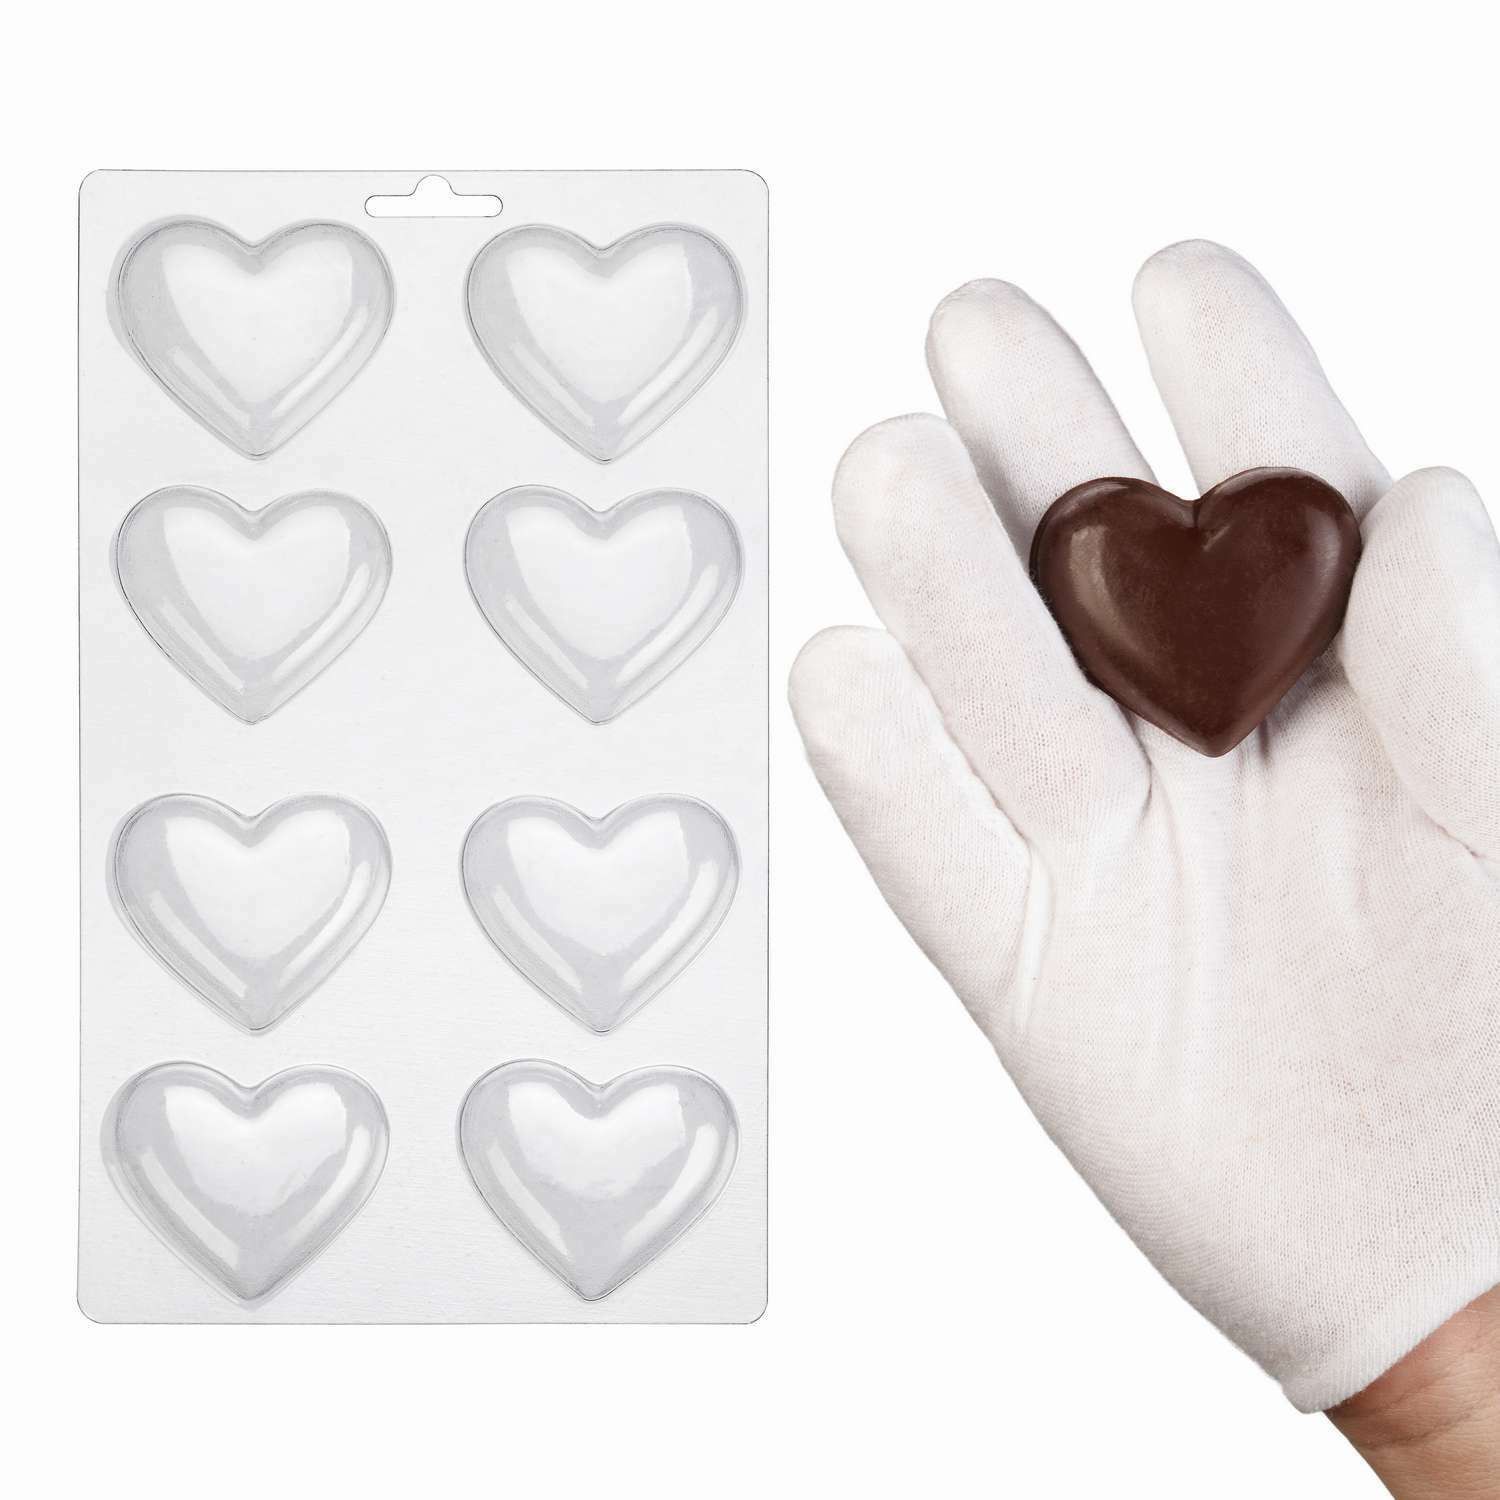 ⋗ Пластиковая форма для шоколада Сердечки купить в Украине ➛ CakeShop.com.ua, фото